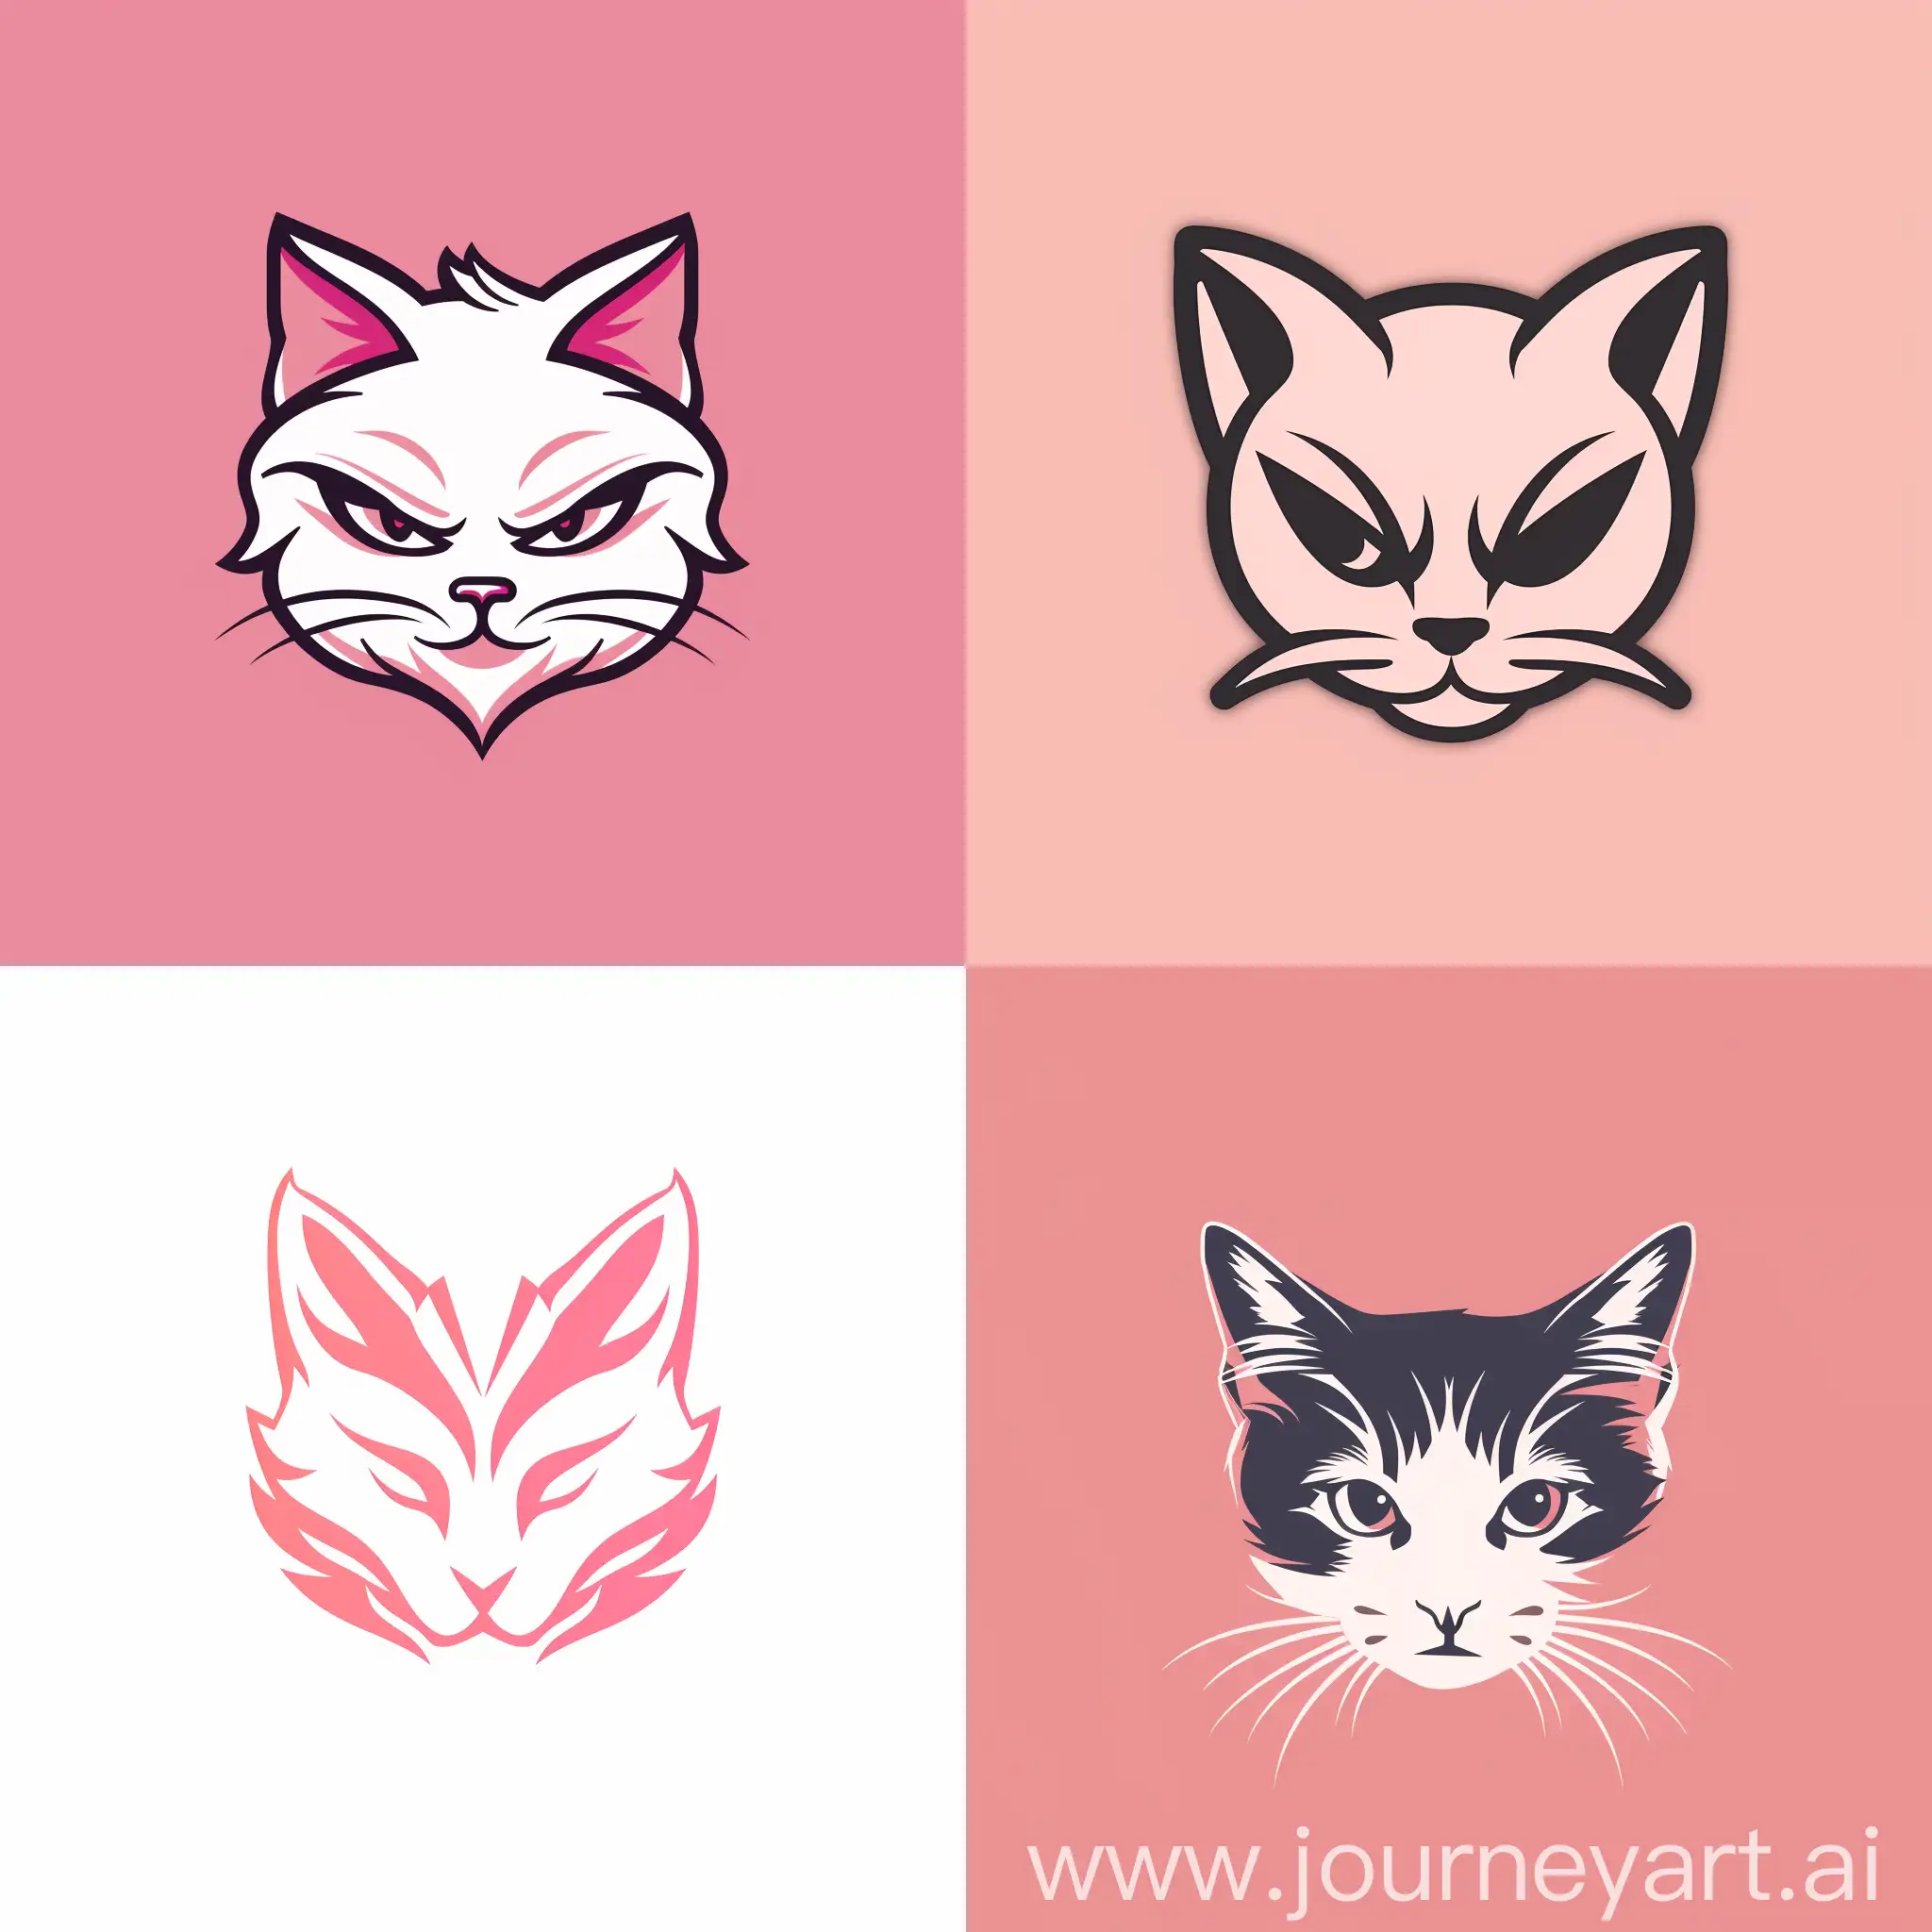 Сделай логотип для Rewzeisch family в минималистичном стиле. Цветовая гамма должна быть нежно розовой. За основу возьми кота и используй элементы из игры GTA 5.